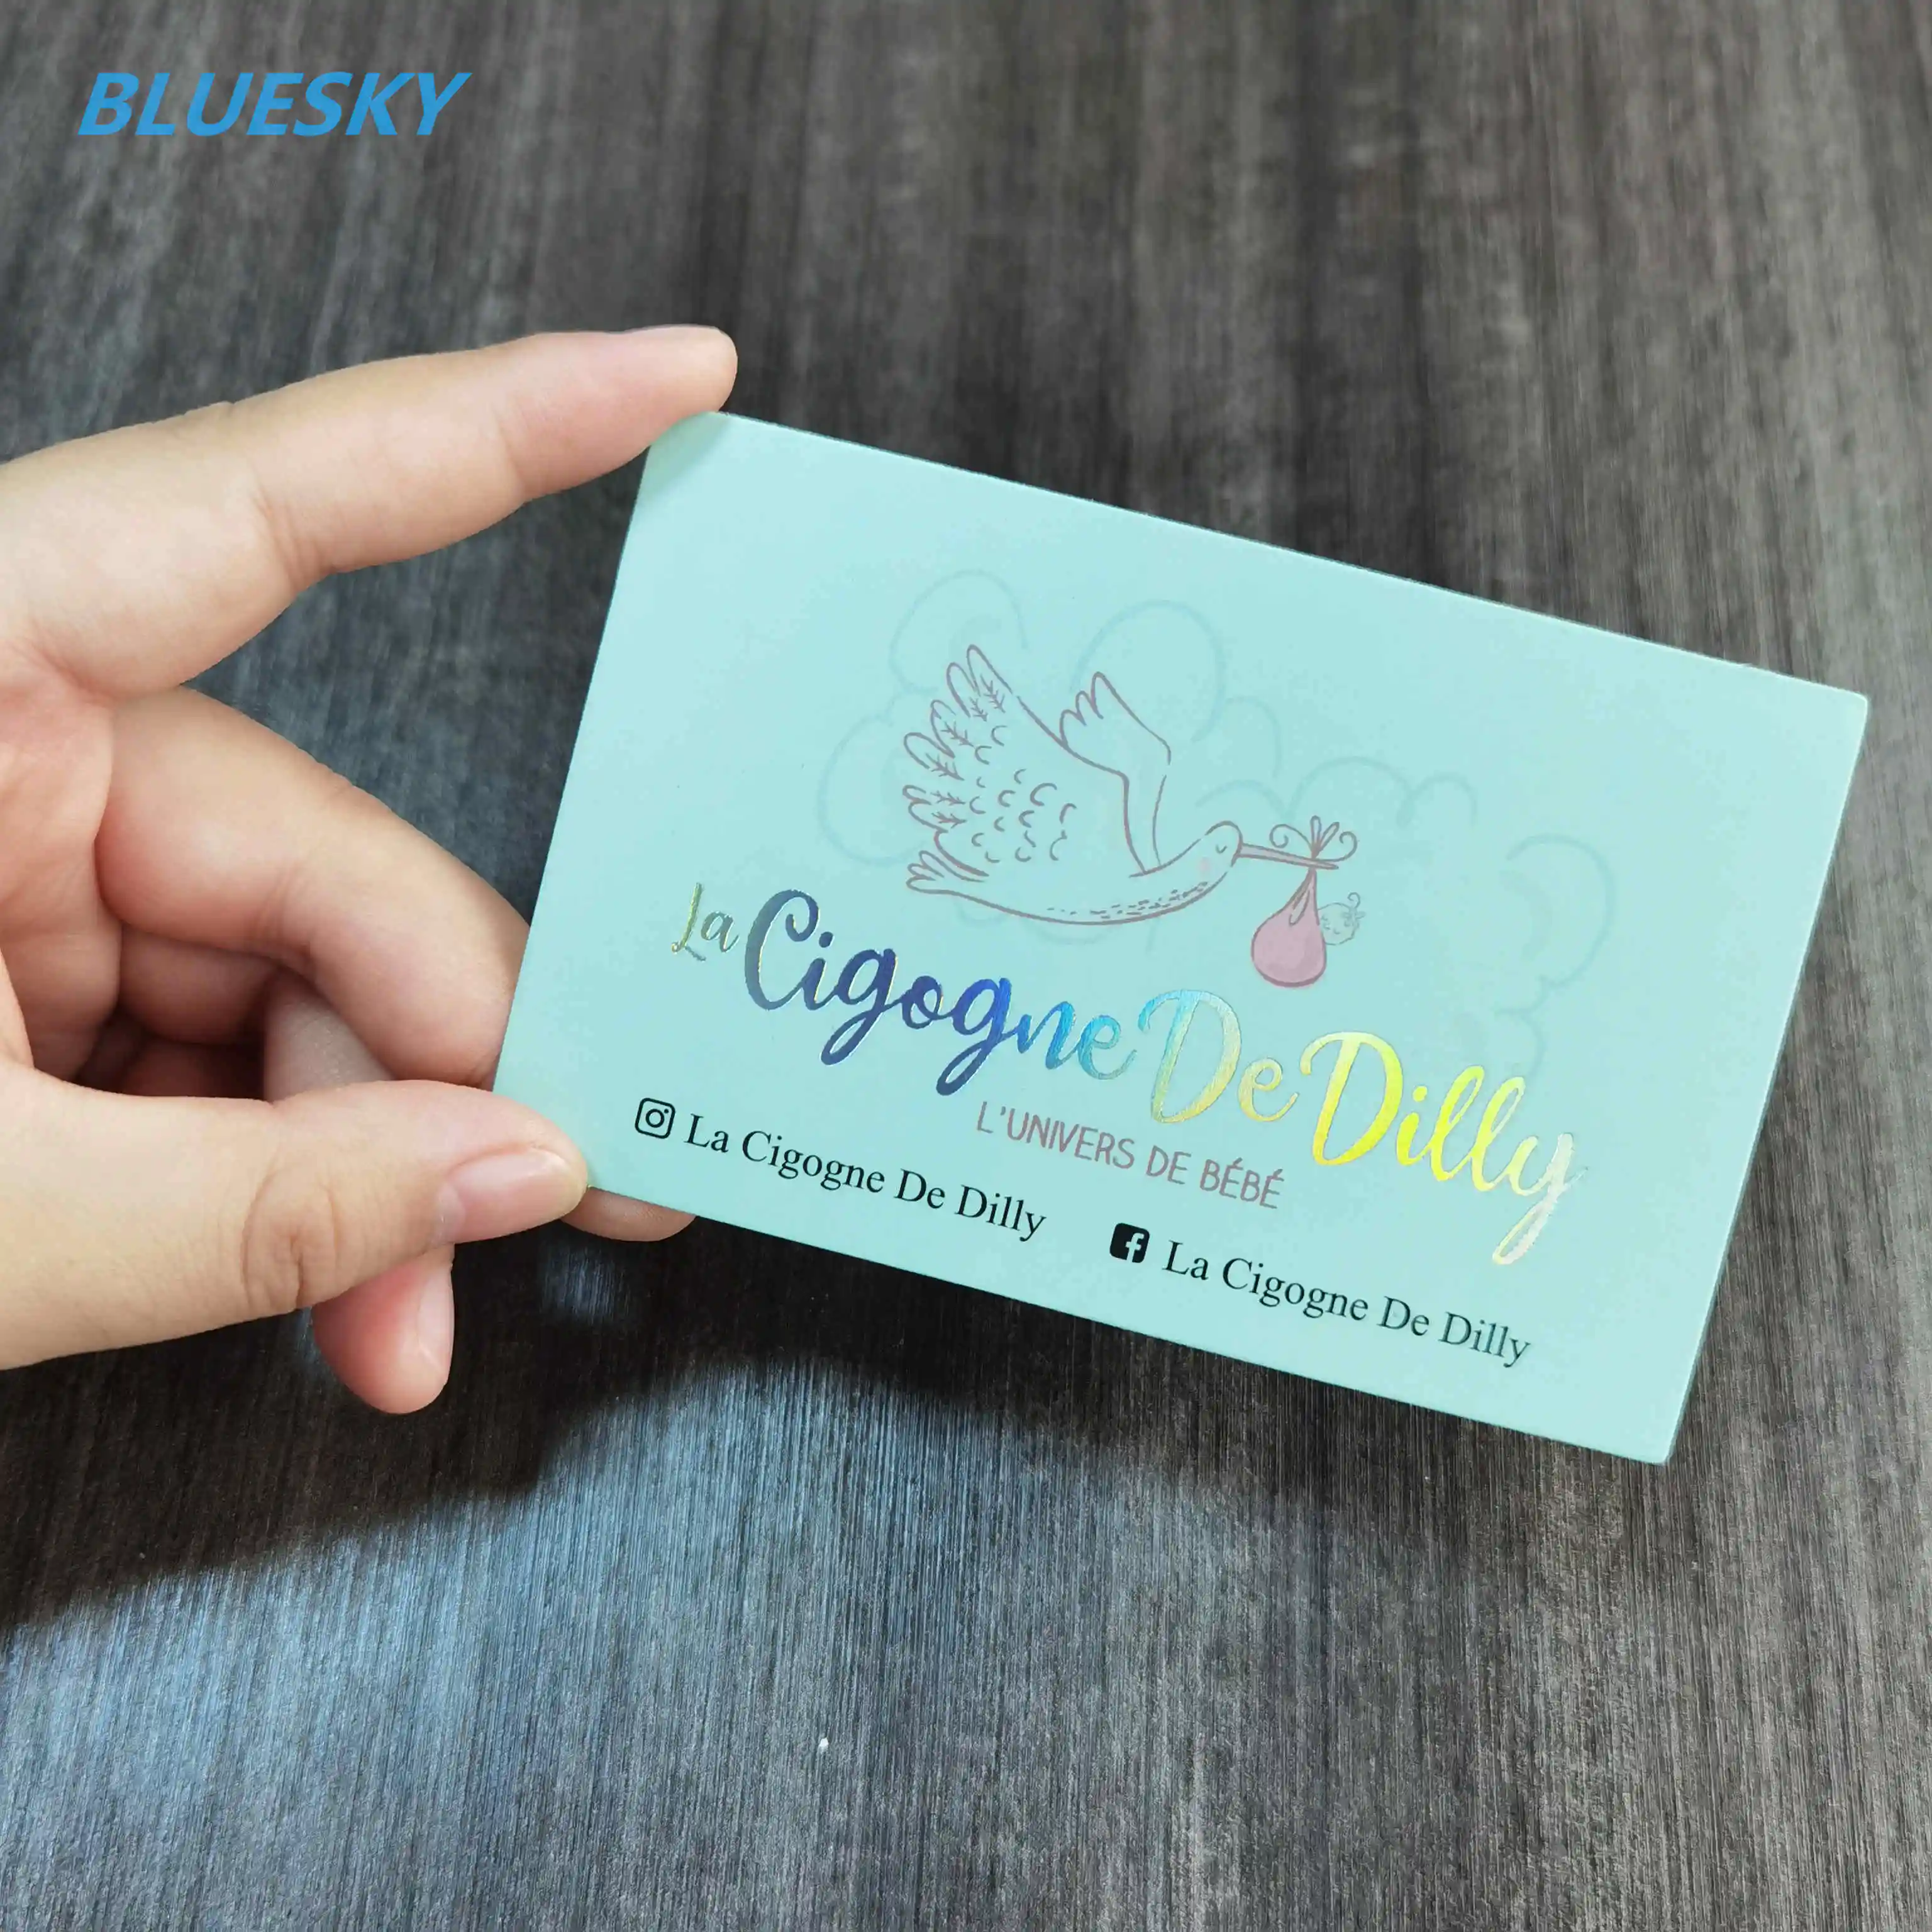 Lue Sky-tarjeta de visita impresa de tamaño estándar, tarjeta de presentación con acabado mate a la moda, estilo de lujo personalizado